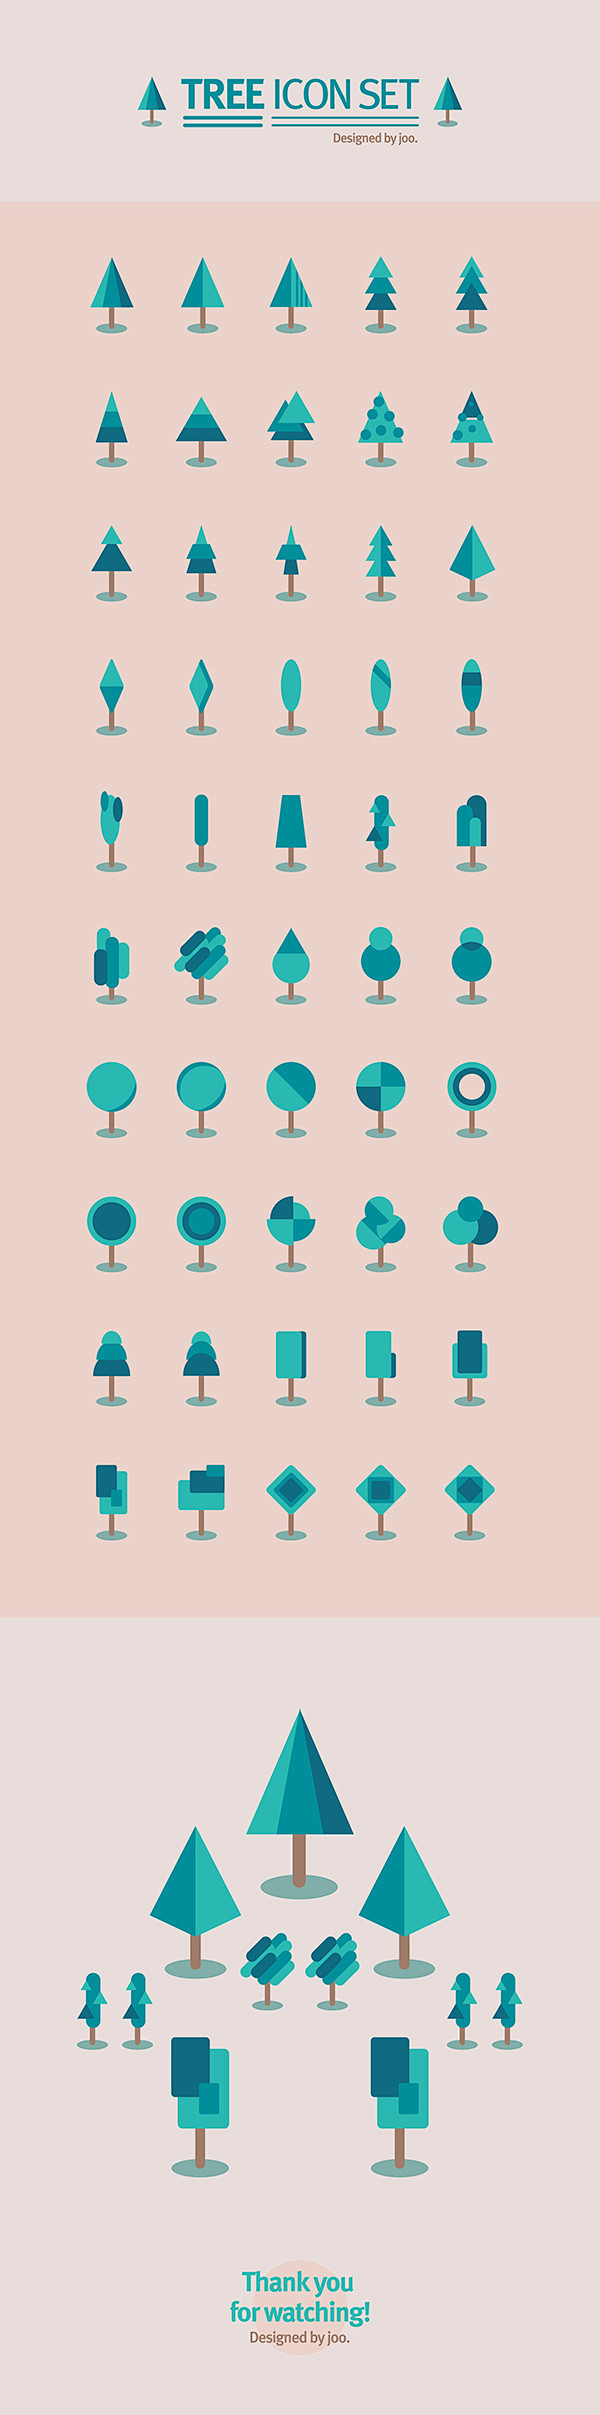 50 tree icon set : 5...